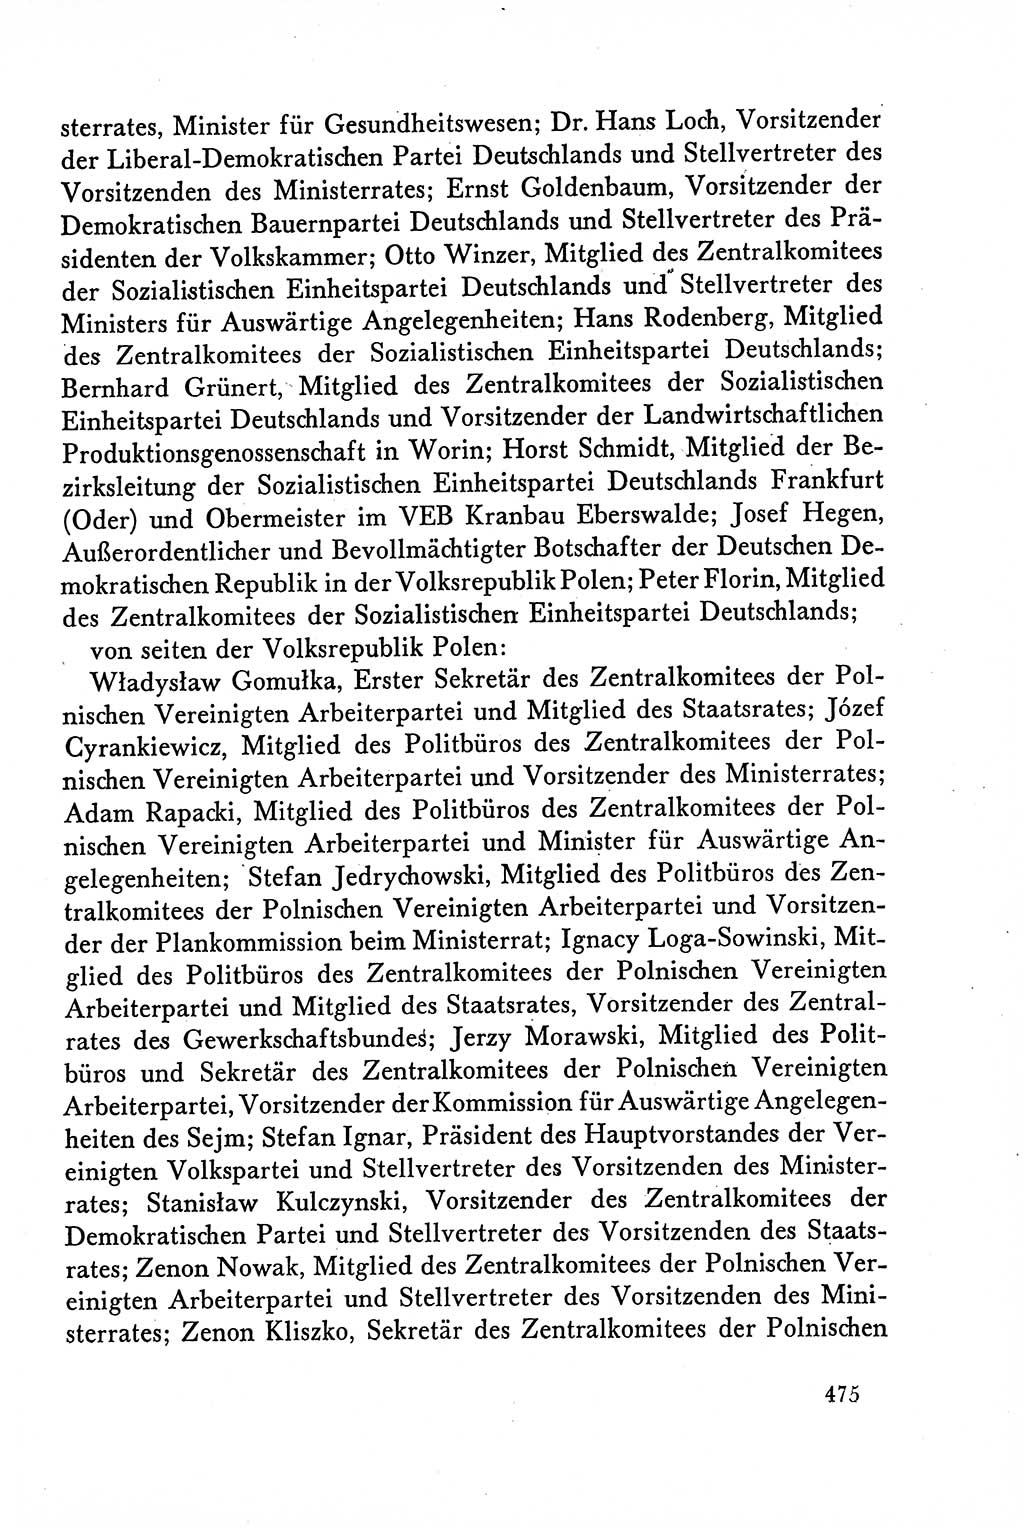 Dokumente der Sozialistischen Einheitspartei Deutschlands (SED) [Deutsche Demokratische Republik (DDR)] 1958-1959, Seite 475 (Dok. SED DDR 1958-1959, S. 475)